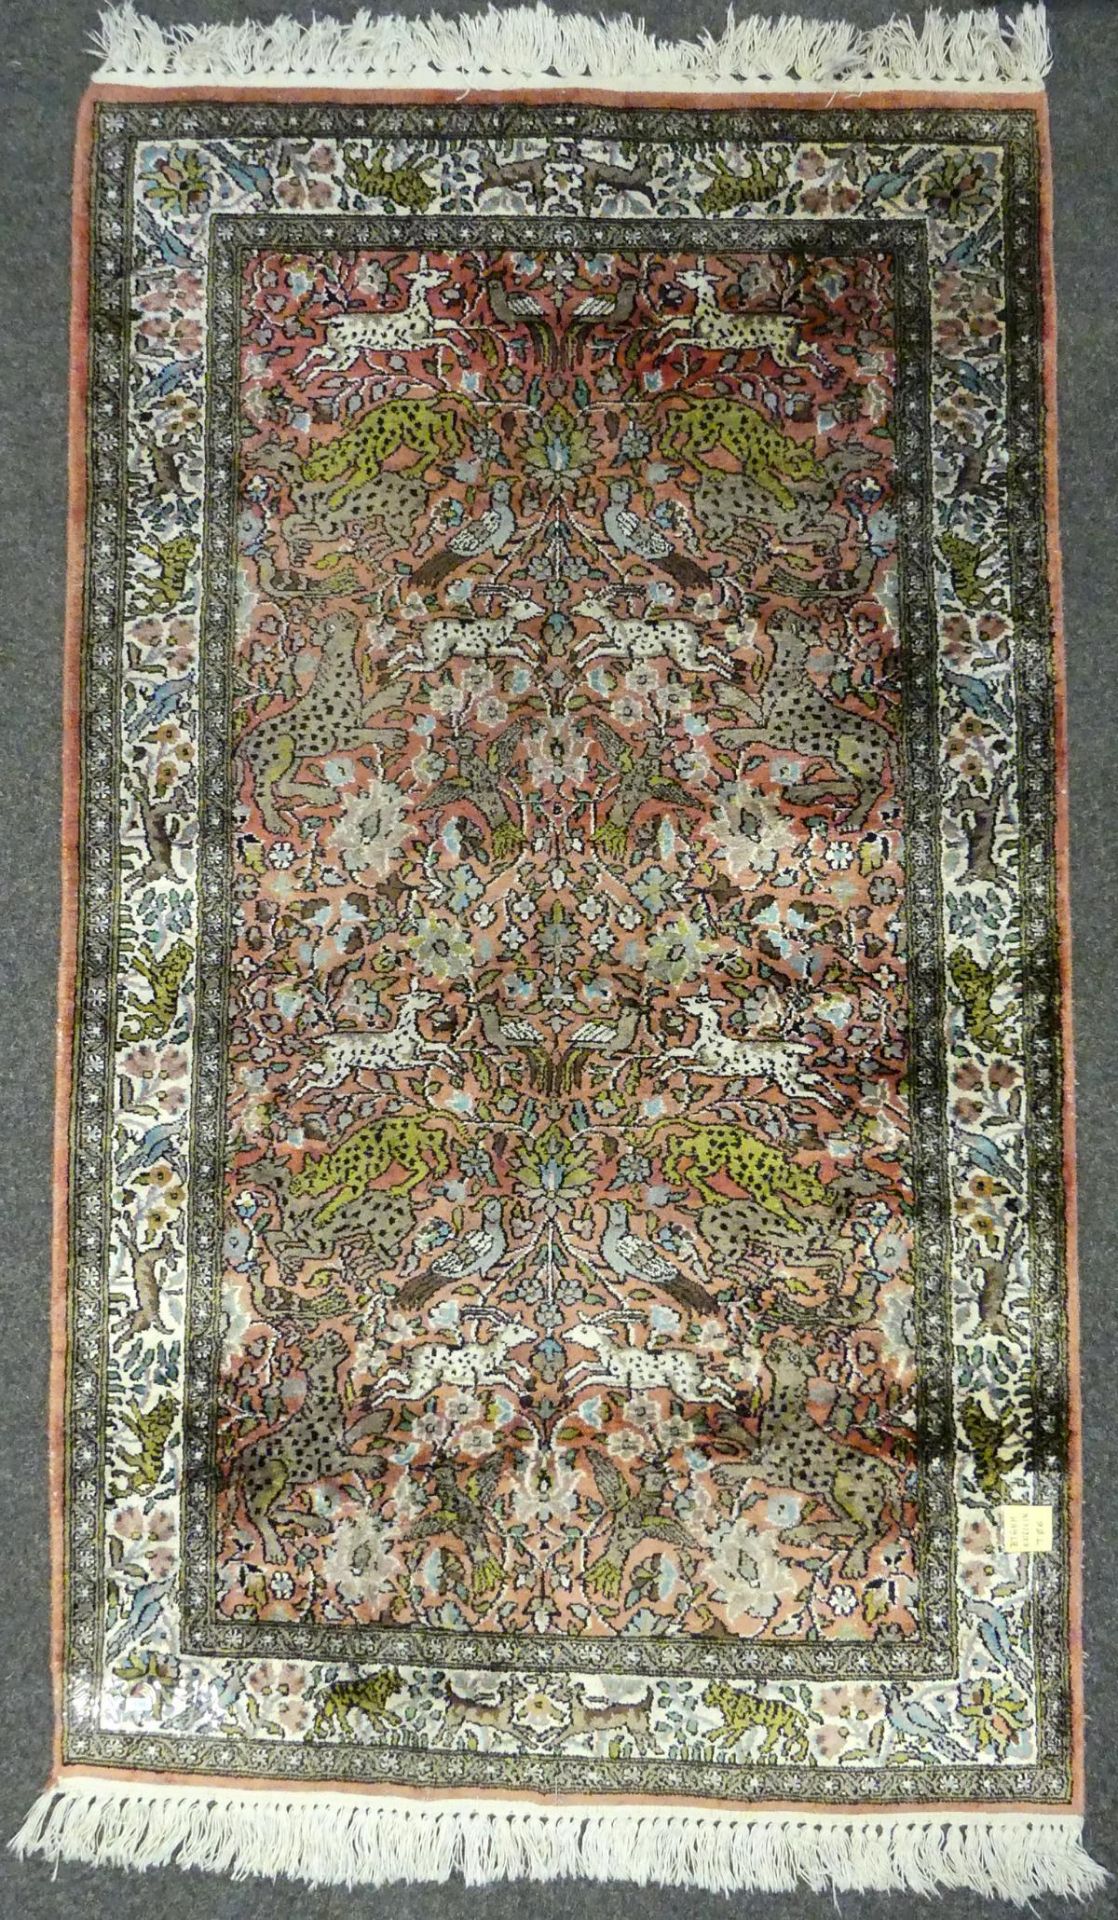 Teppich, rosa, grün, Seide, Rand mit Tieren, ca. 90 x 153 cm